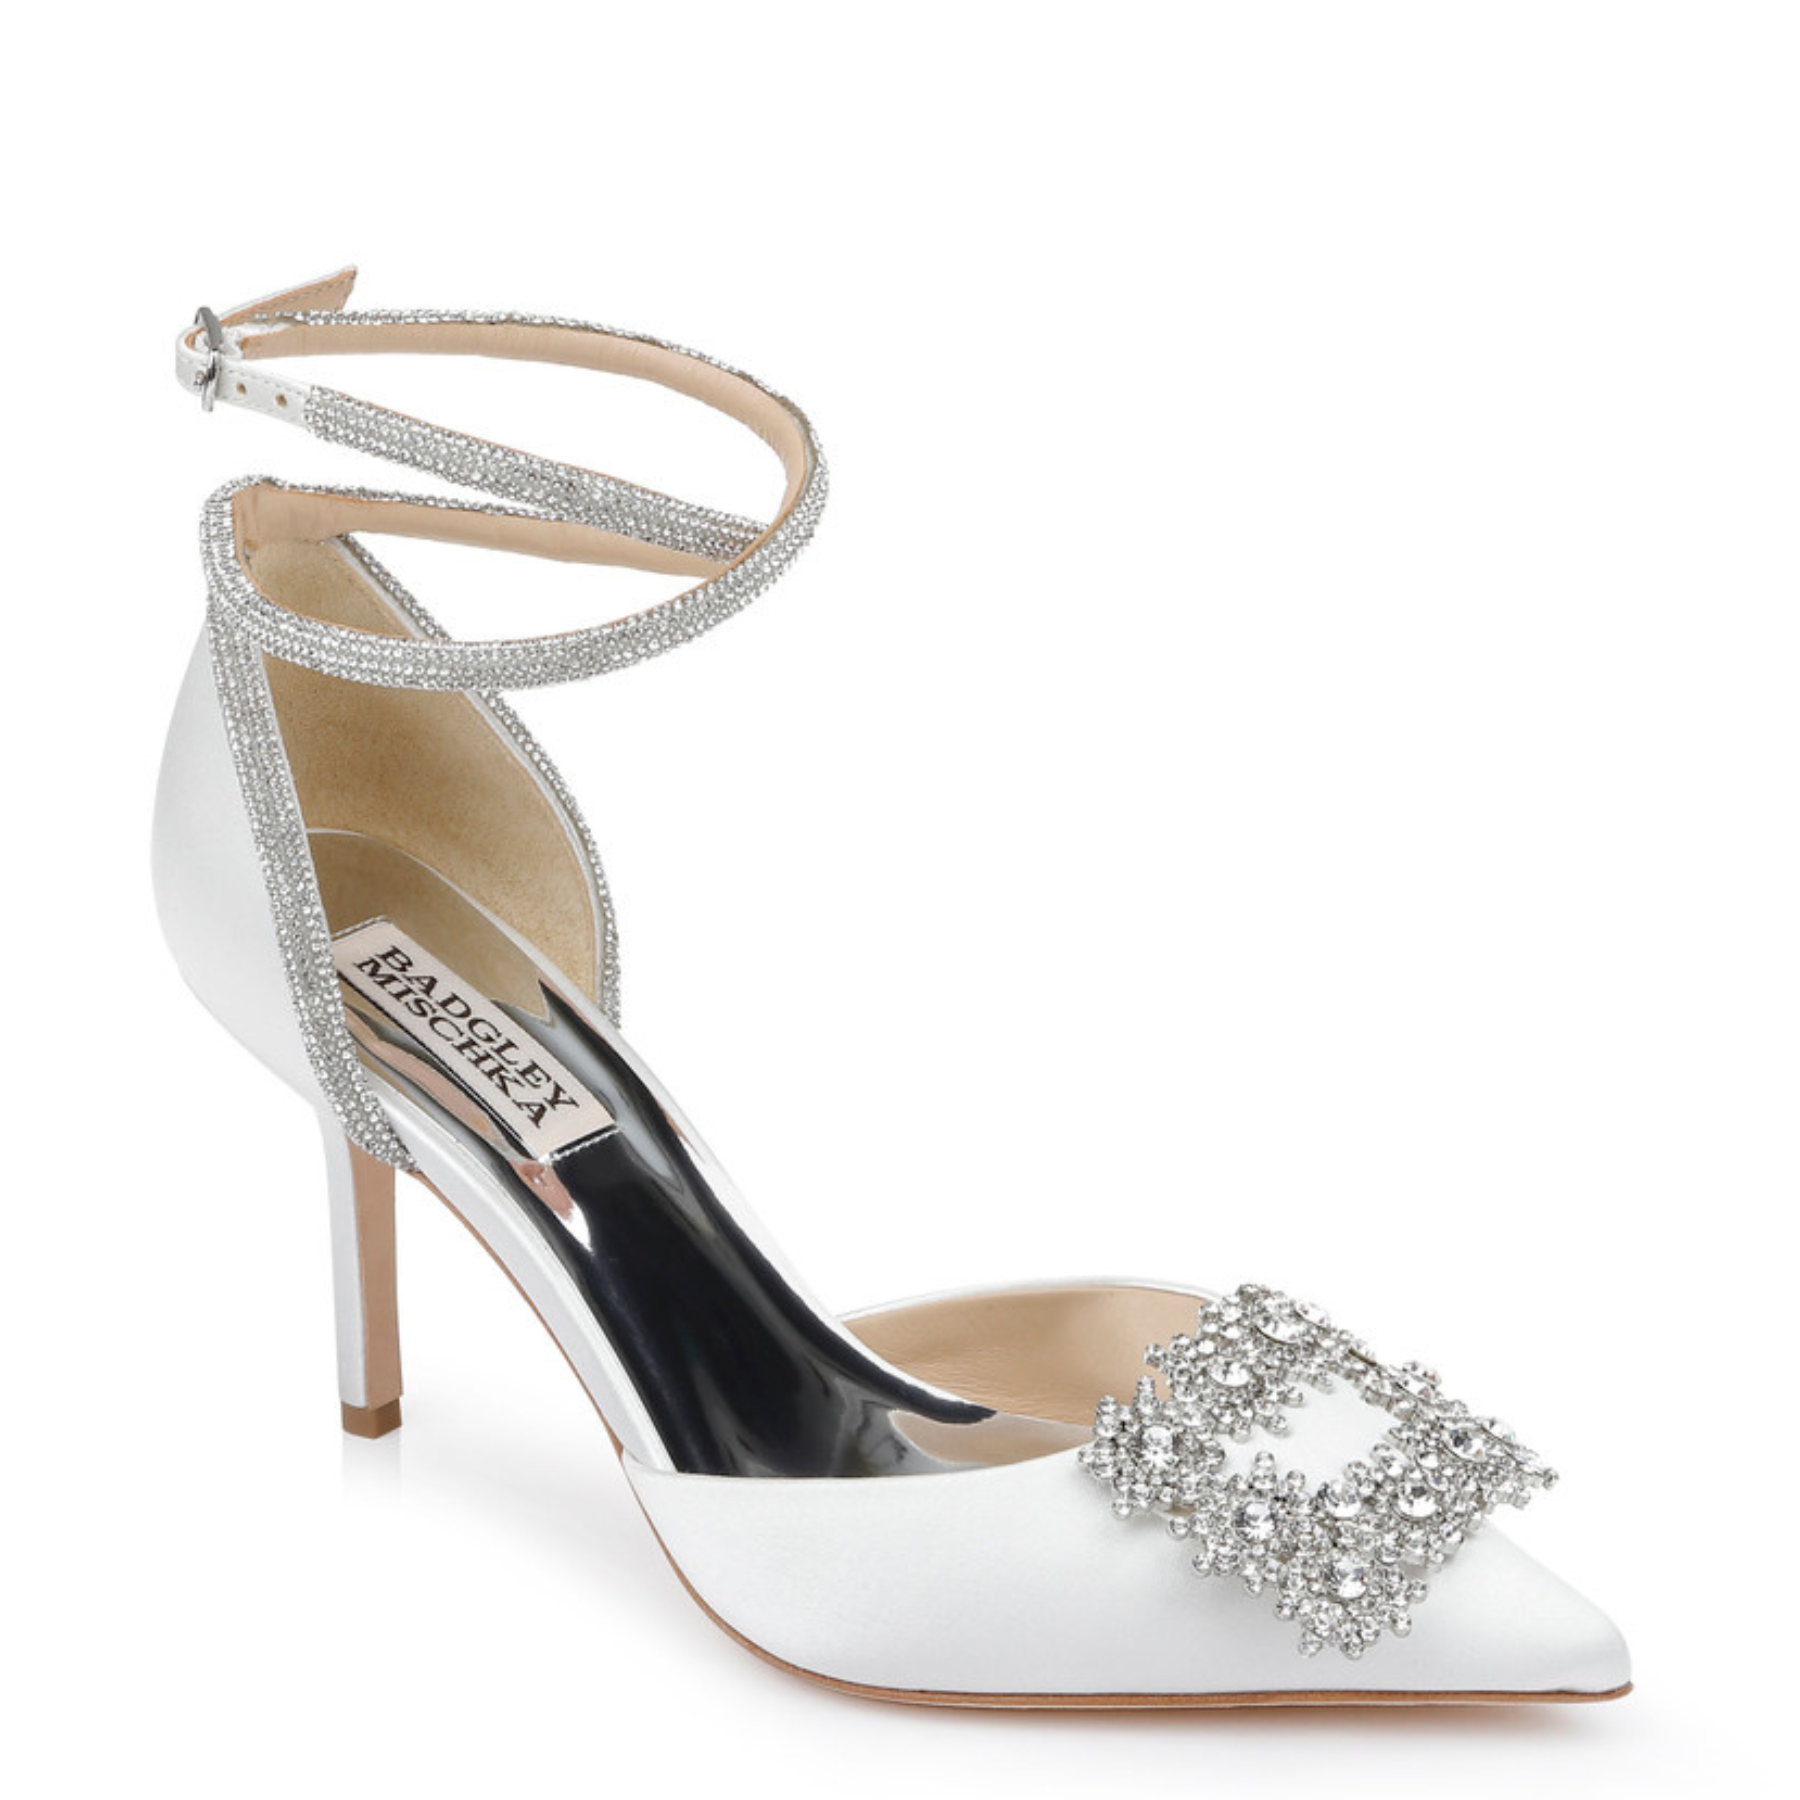 Saint - Pointed Toe Crystal Embellished Stiletto - Soft White